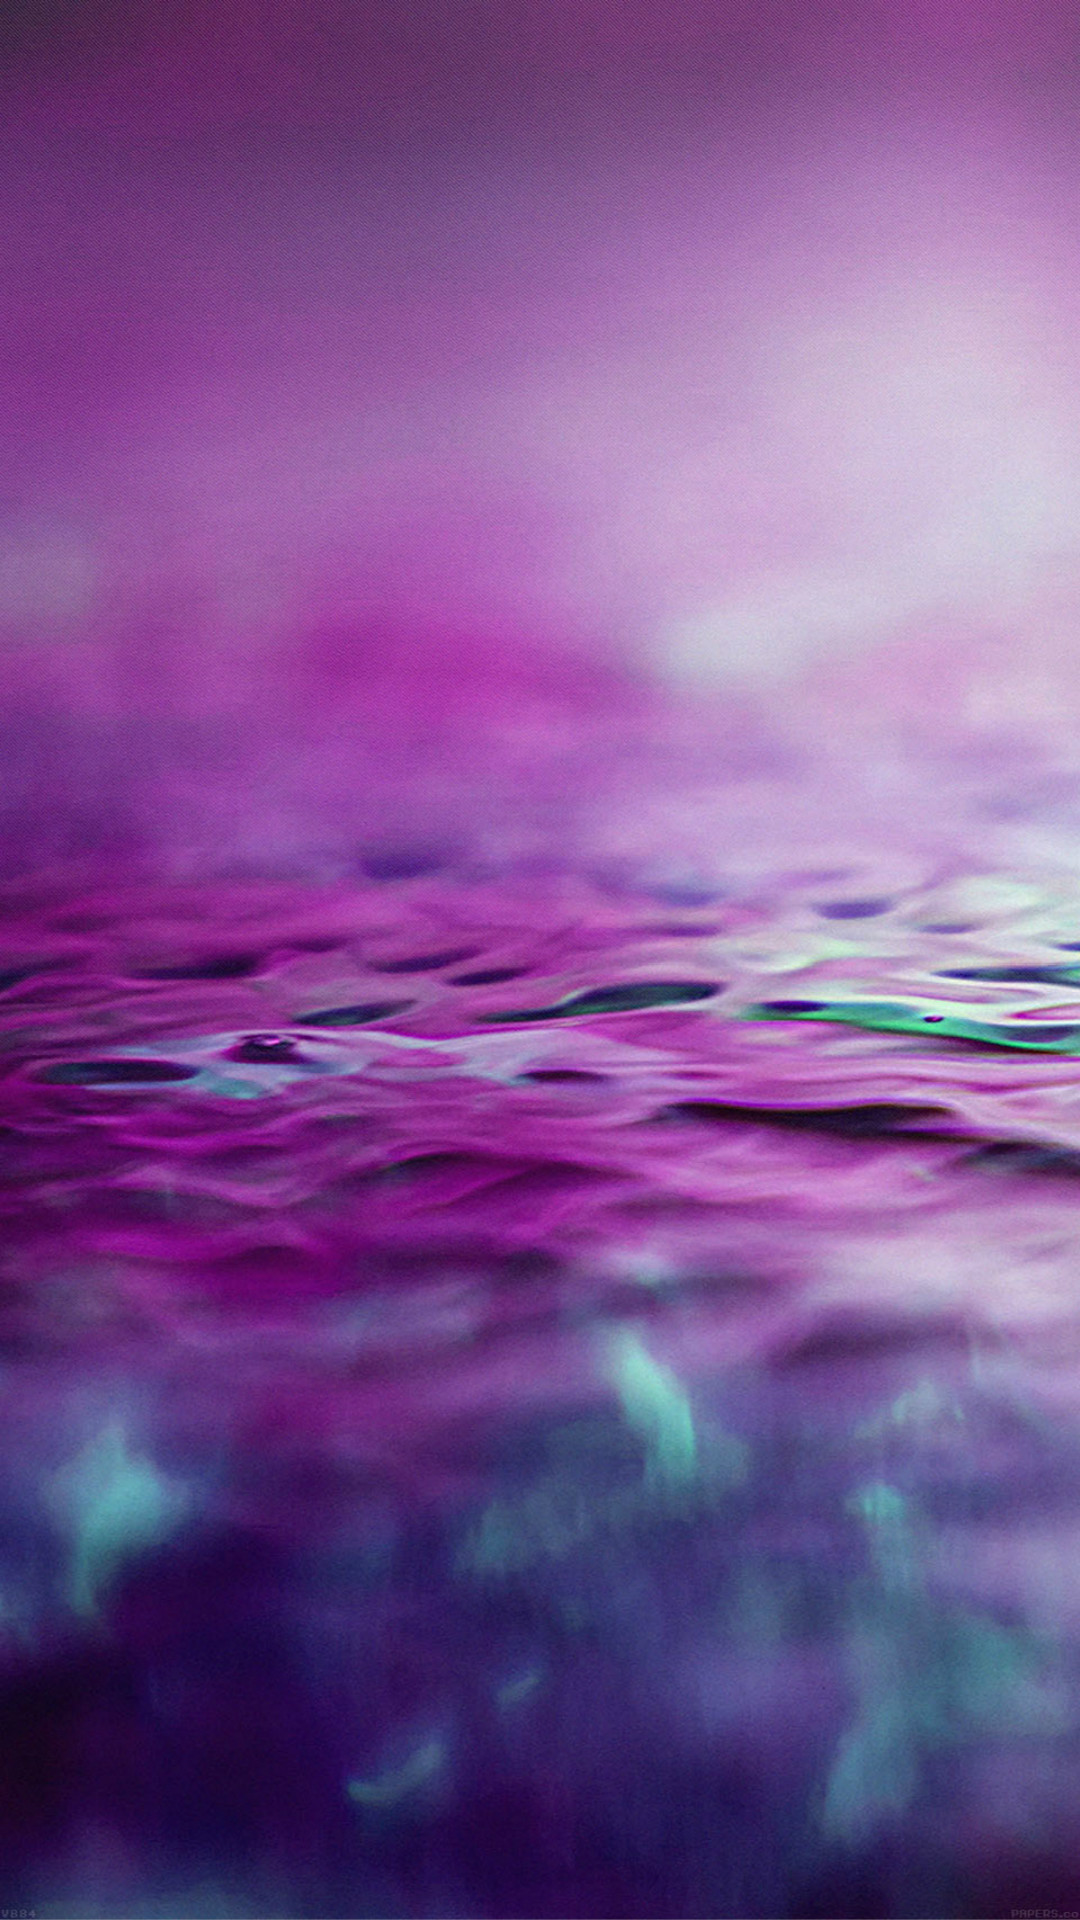 Hoa tím nước mờ nền trừu: Hãy cùng chiêm ngưỡng hình ảnh về những bông hoa tím trong nước mờ nền trừu. Đây là một cảnh tượng tuyệt đẹp, đầy màu sắc và rất thu hút mọi ánh nhìn.